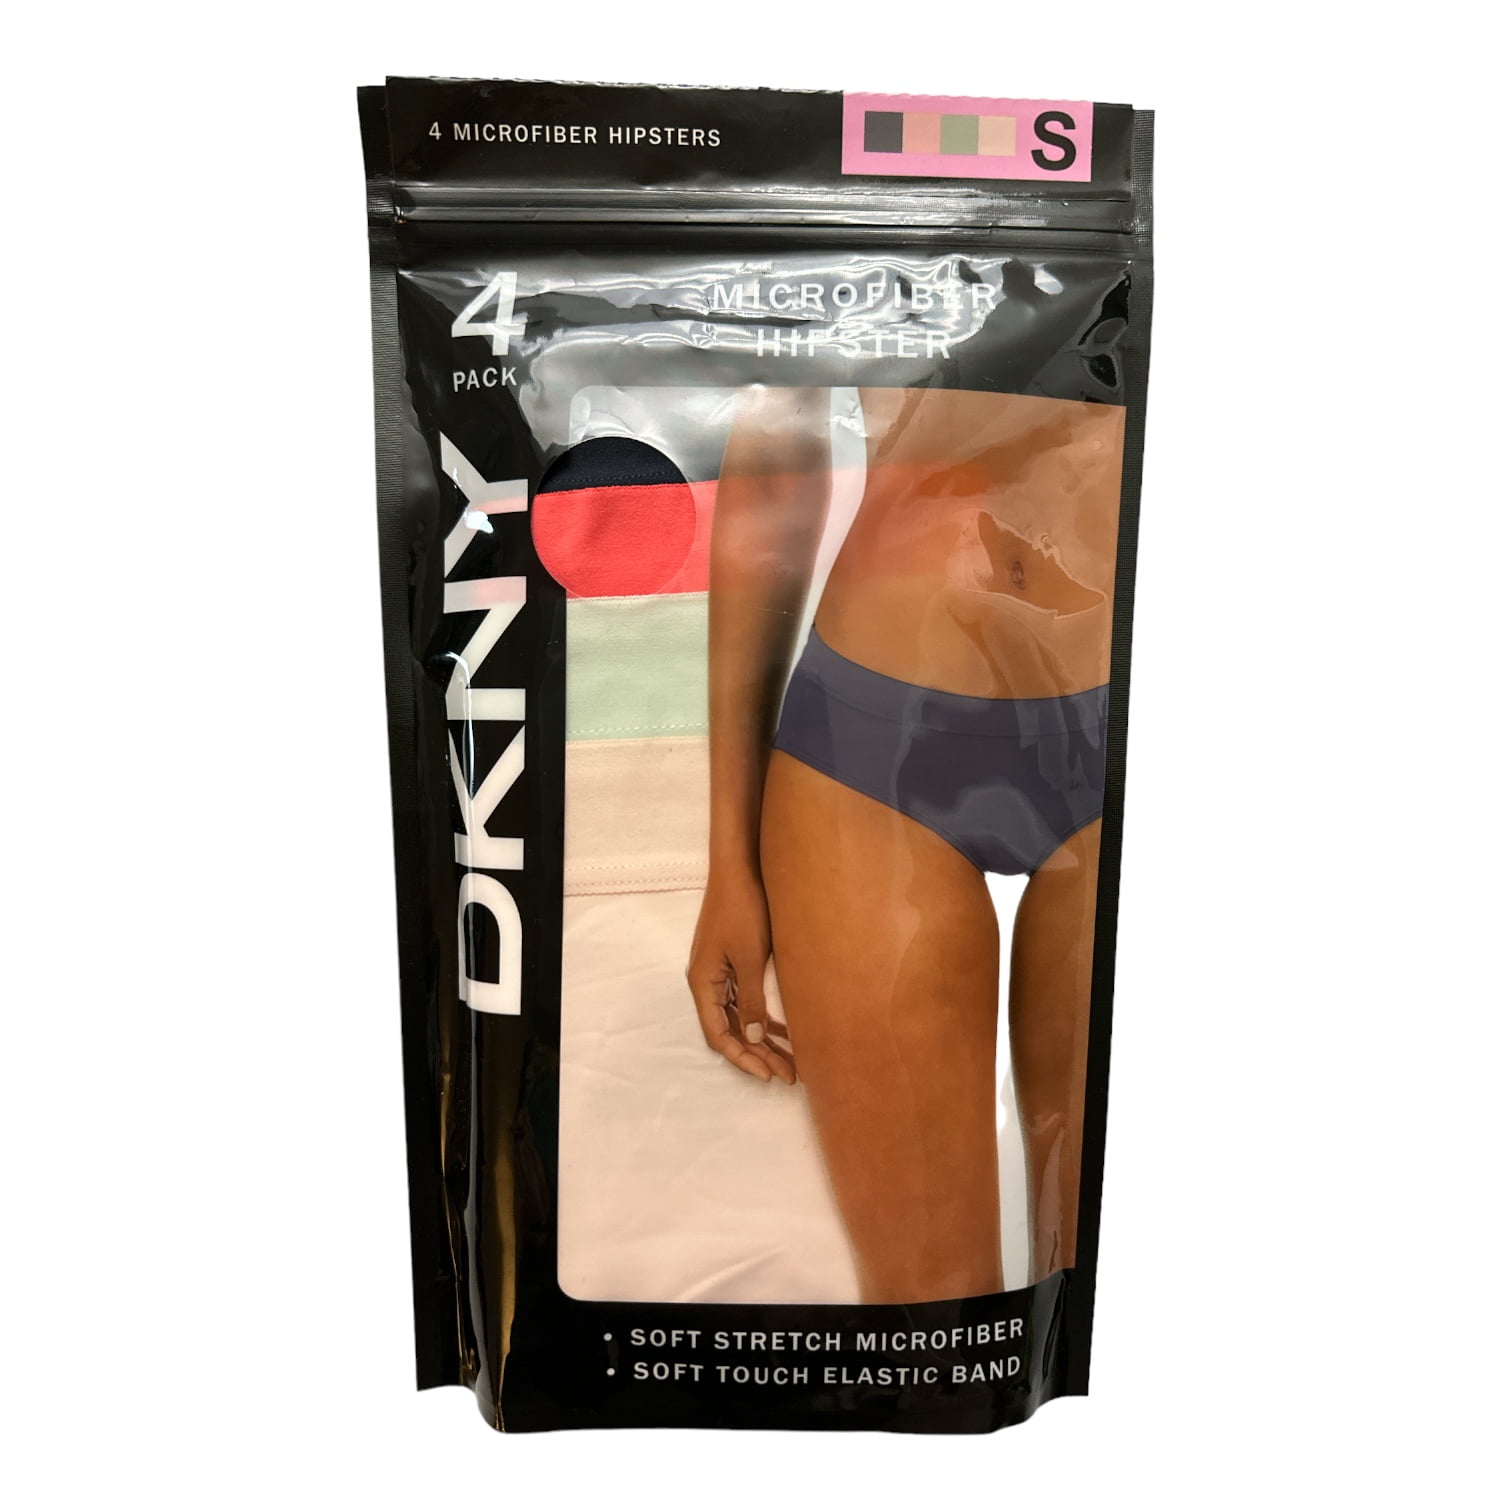 DKNY A6305 Black Litewear Seamless Cut Hipster Panty Women's Underwear Size  L